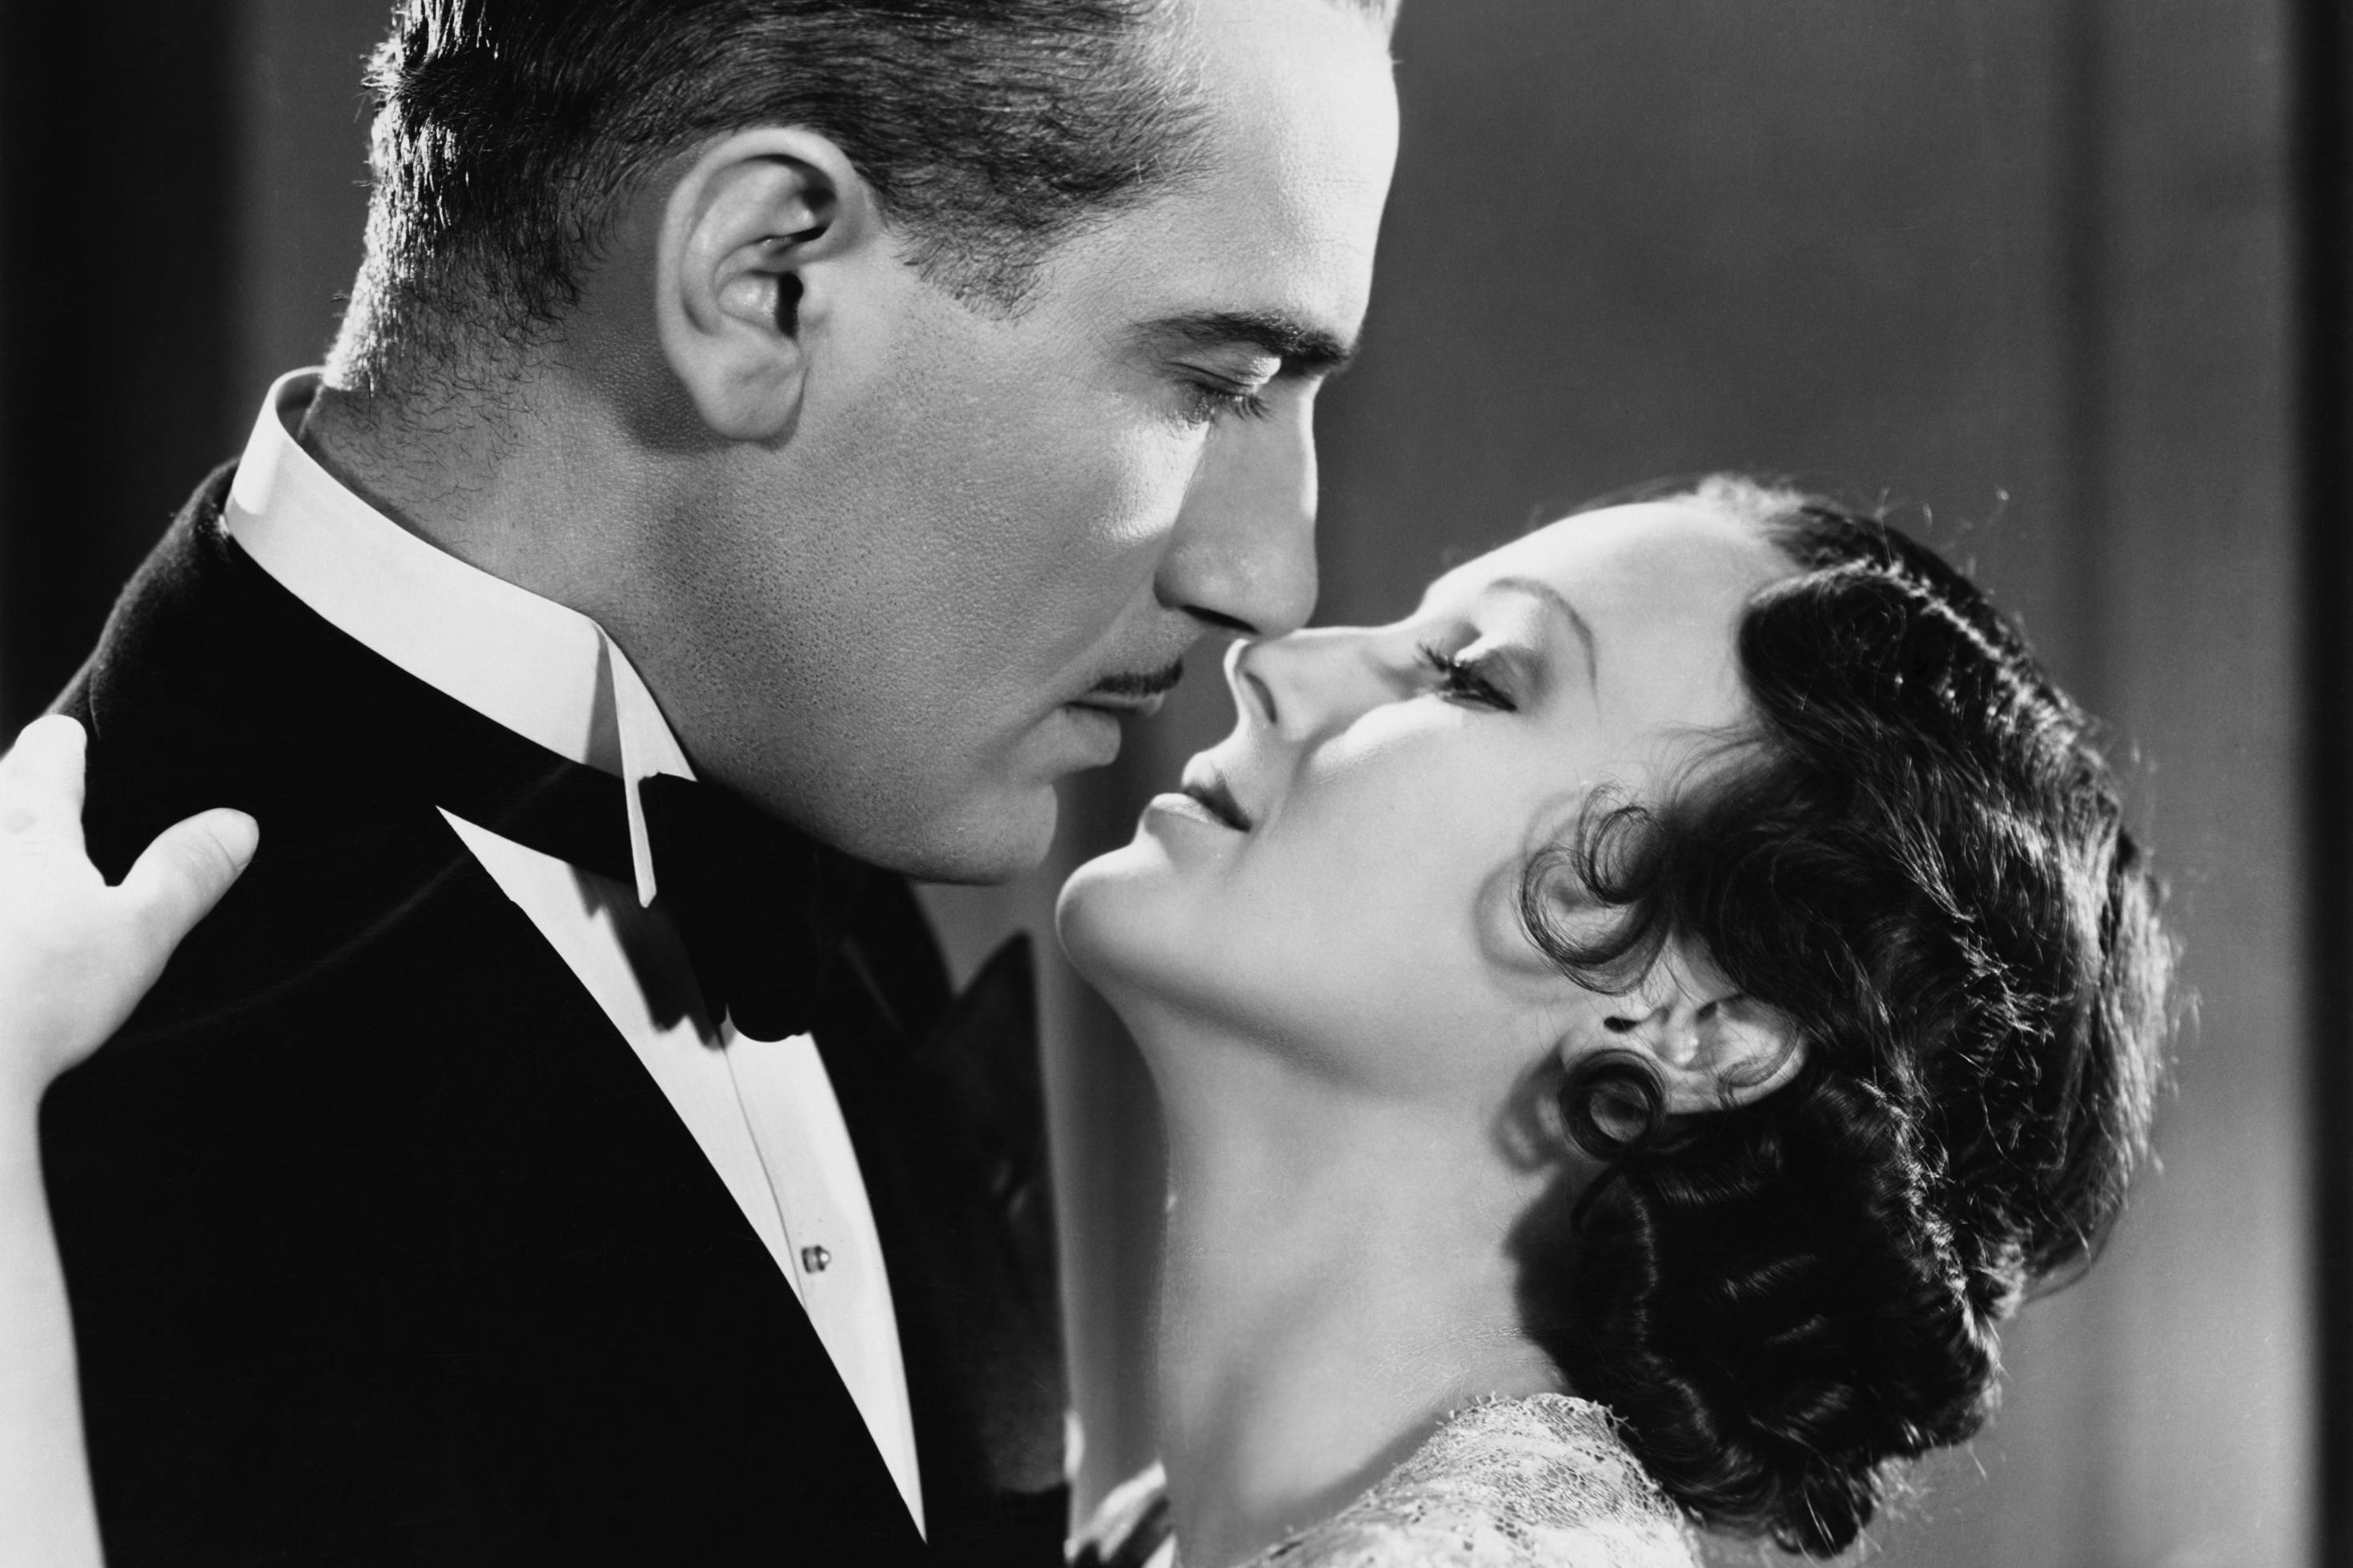 Eine Frau und ein Mann in eleganter Kleidung stehen eng zusammen und sind kurz davor sich zu küssen. Szene aus einem 1920er Jahre Film.